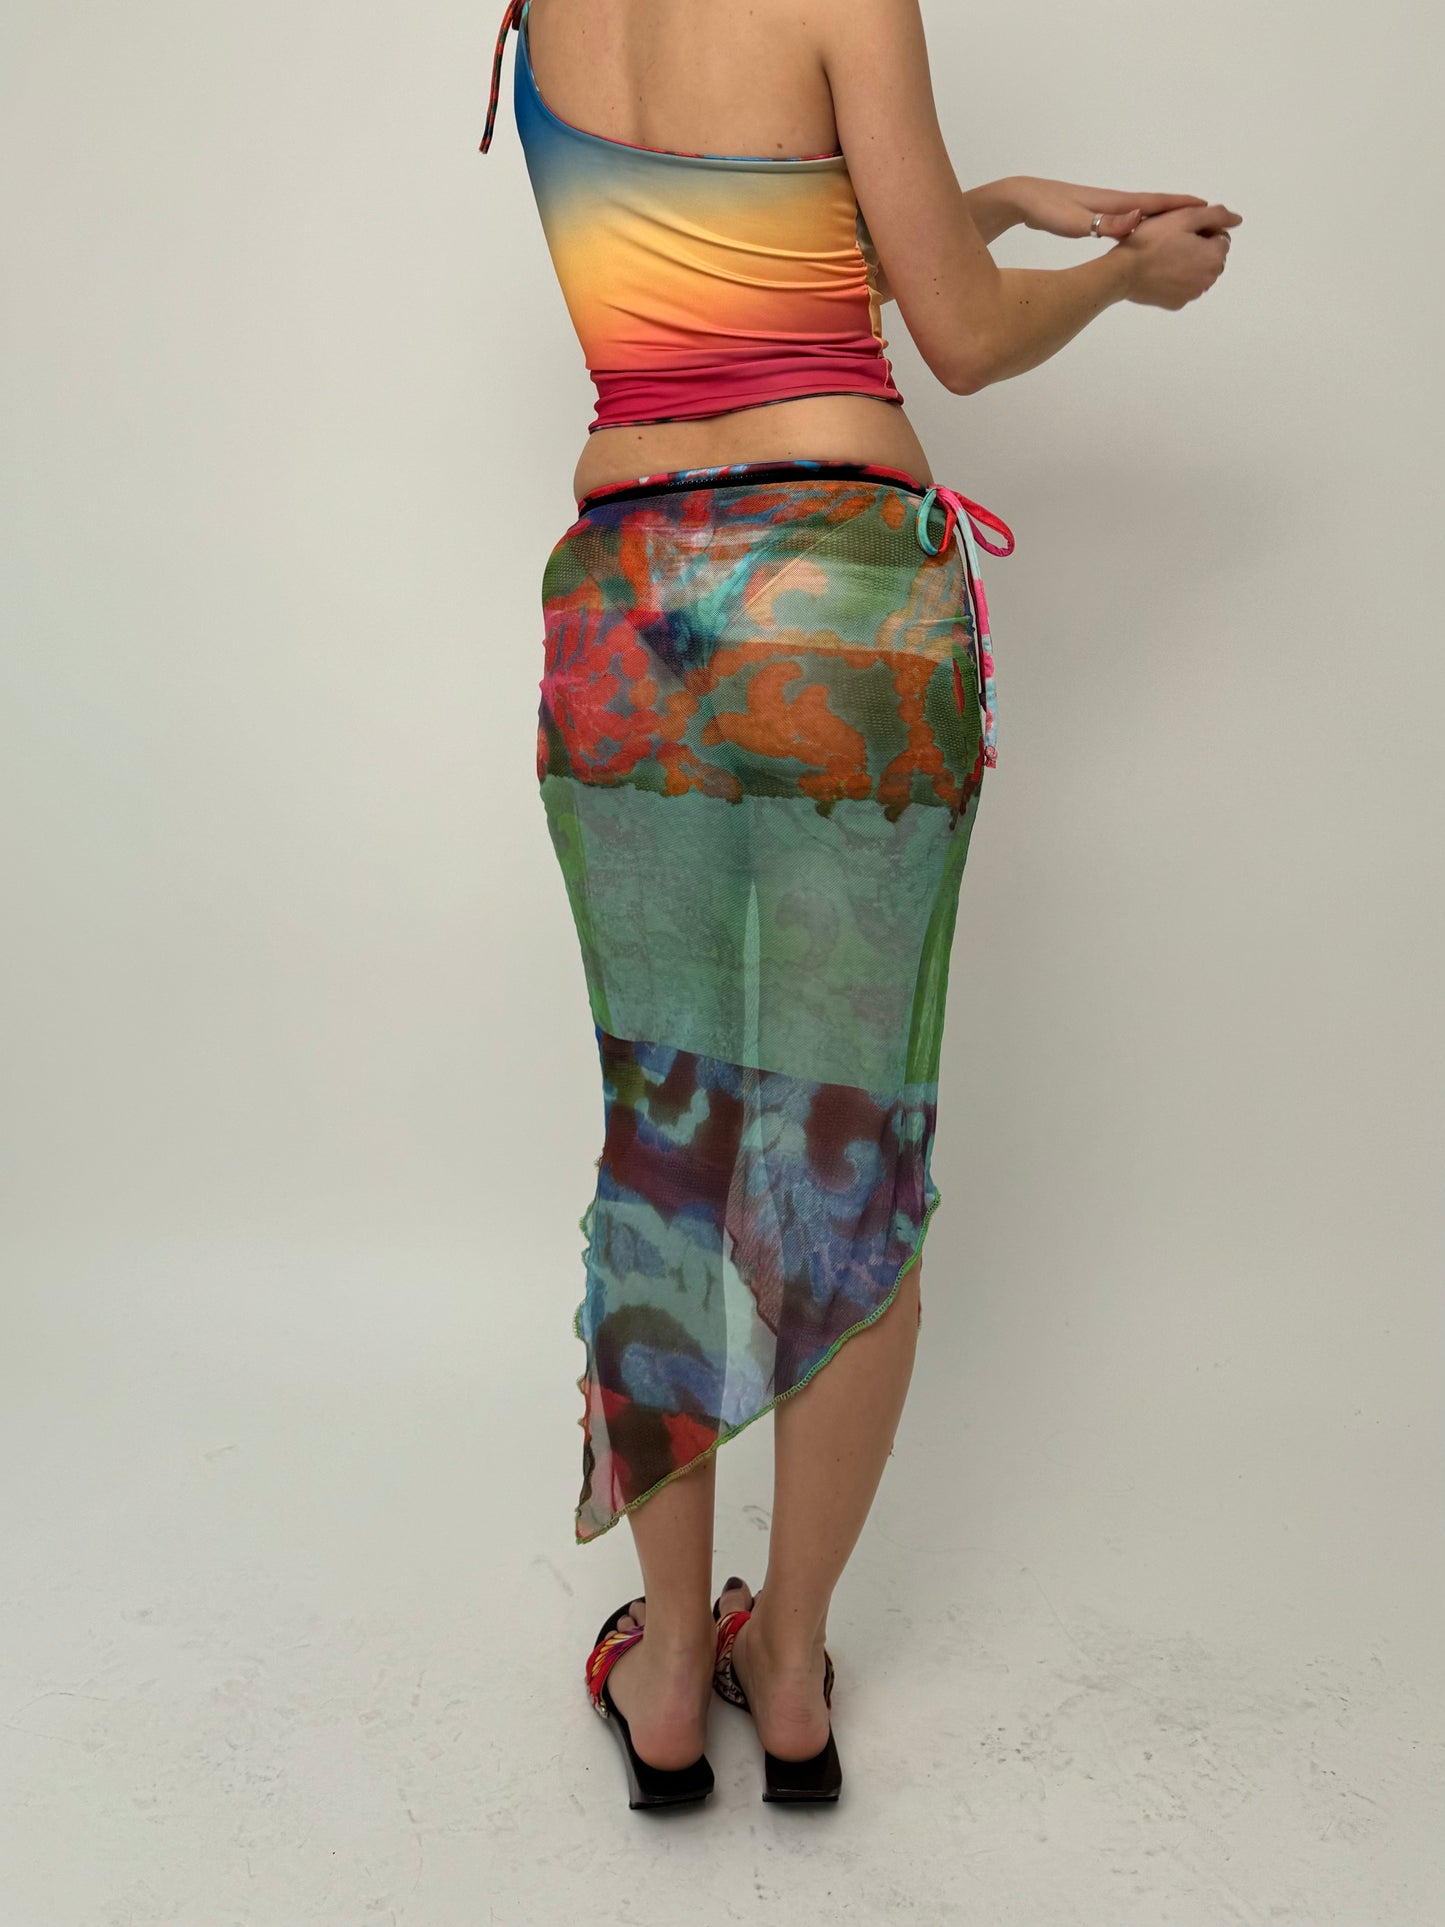 Lace Mesh Midi Skirt